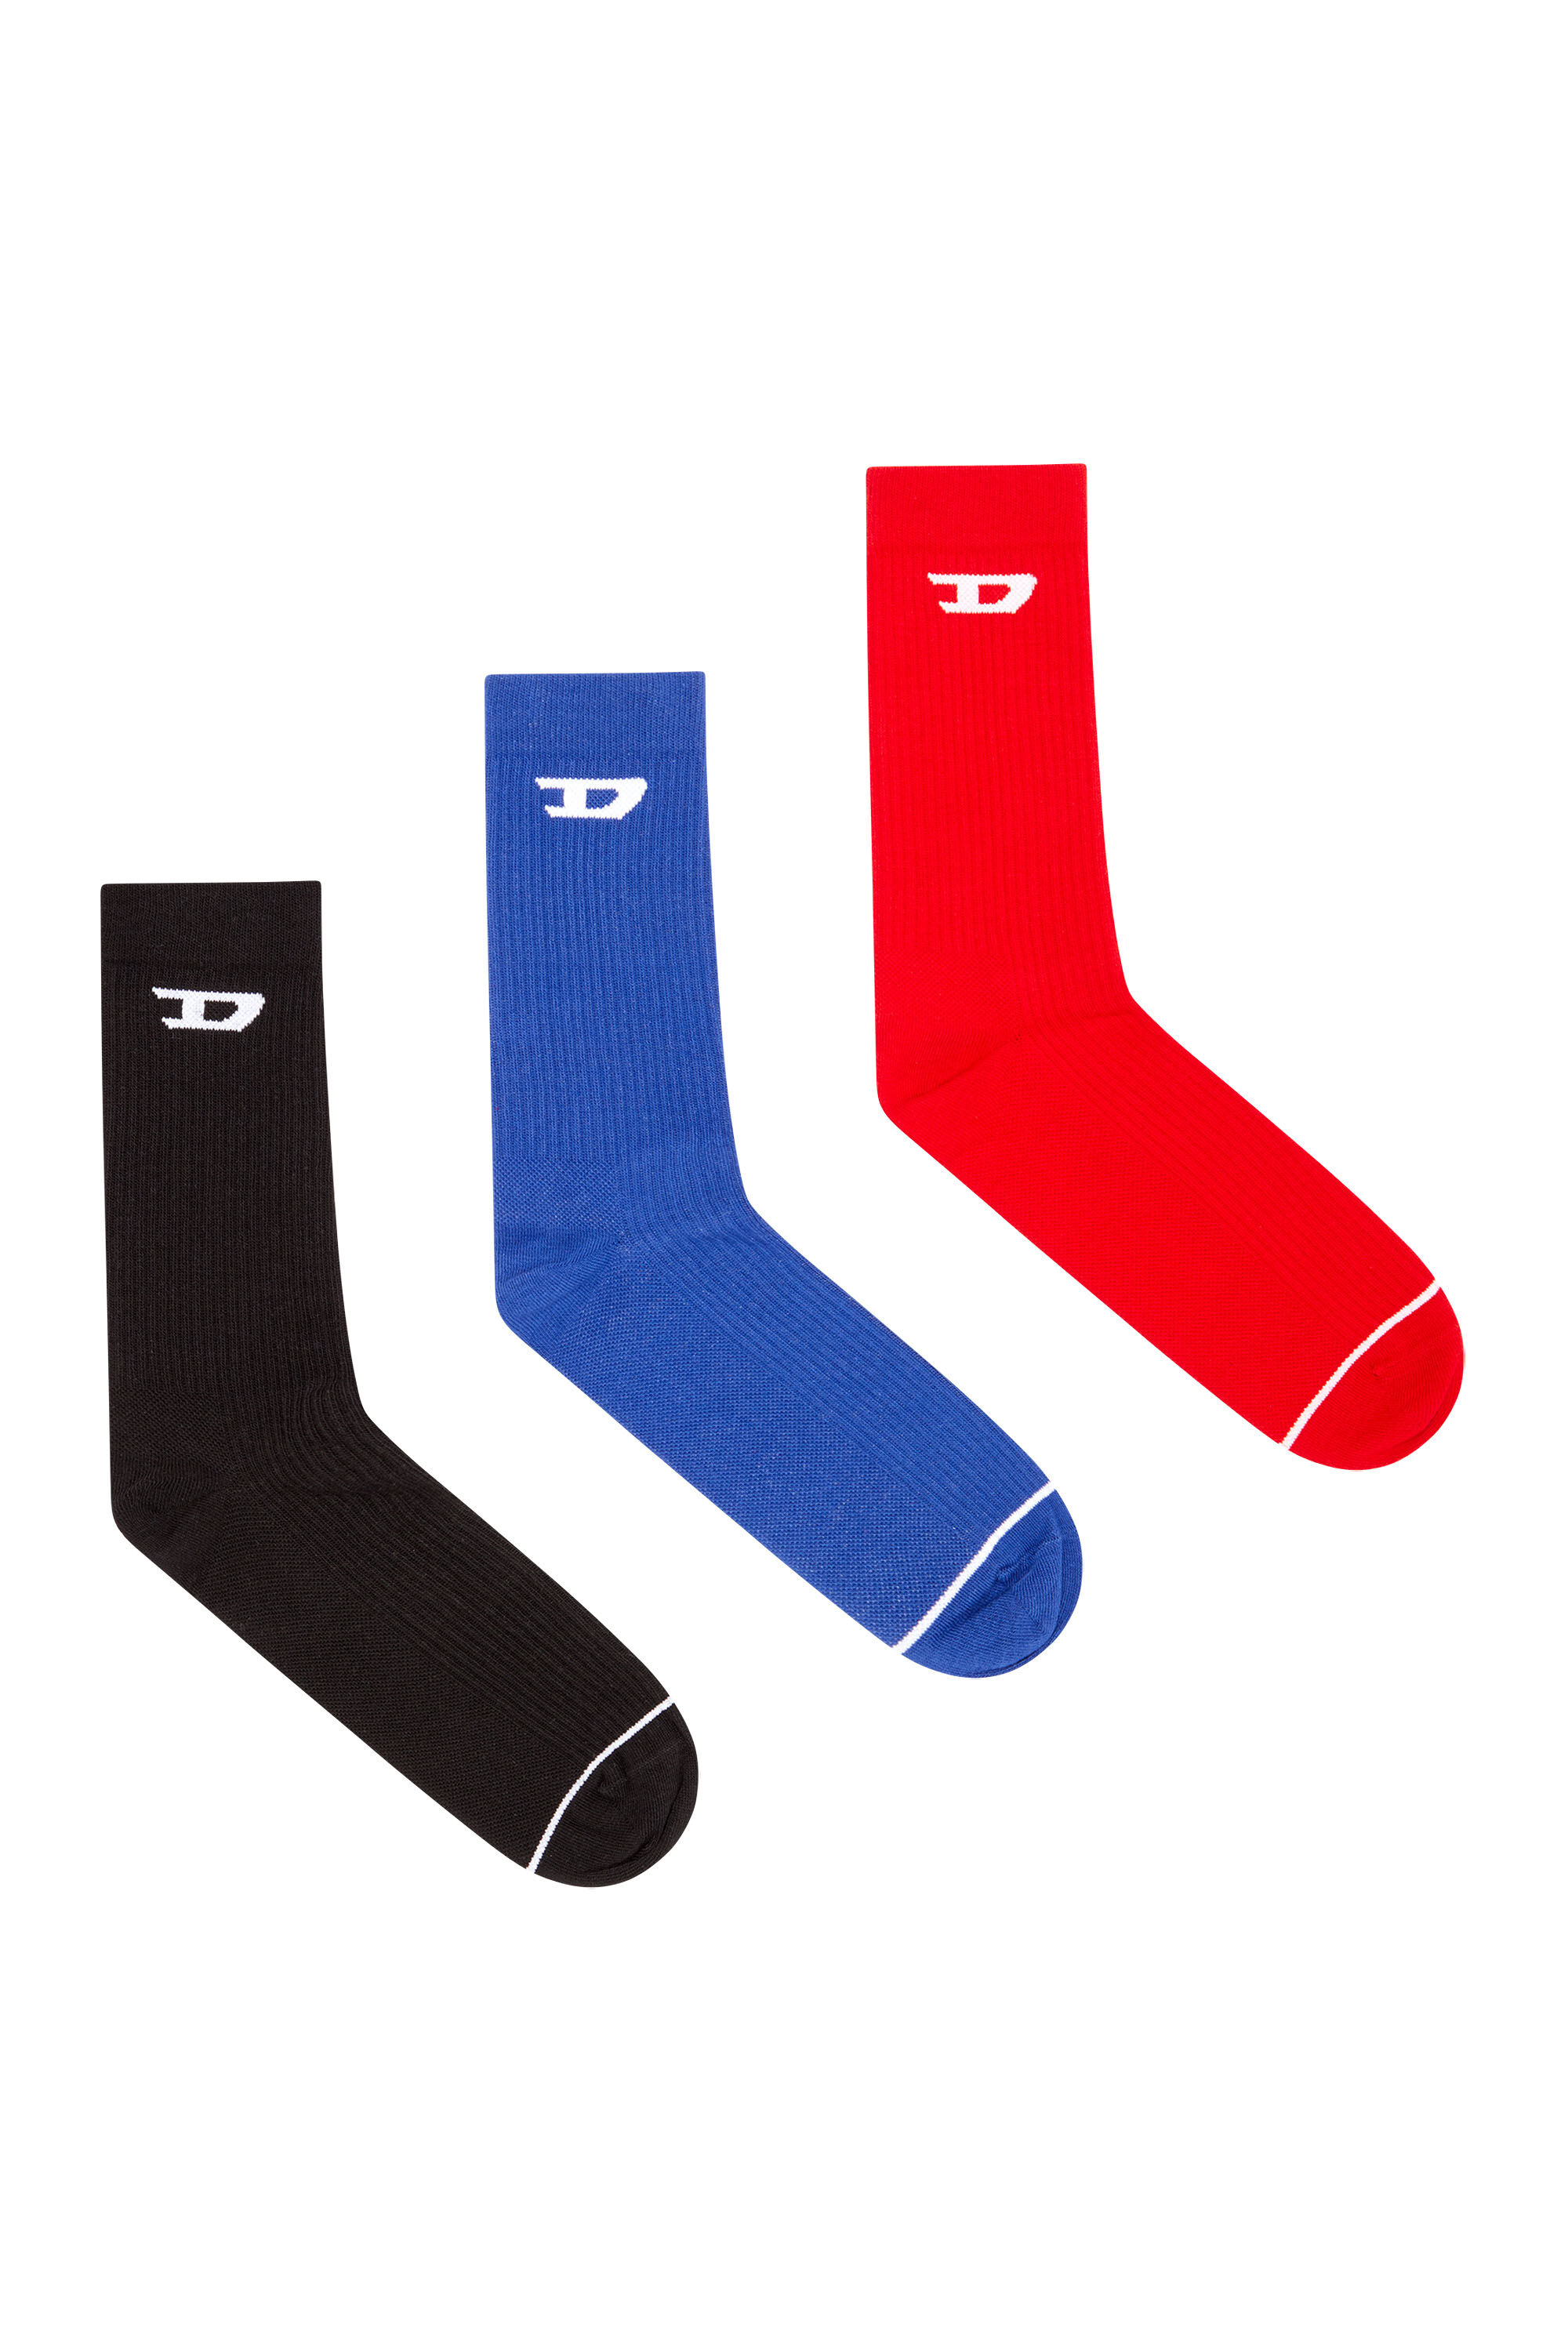 Diesel - SKM-D-CREW-LIGHT-SOCKS, Male 3-pack of ribbed socks with D logo in マルチカラー - Image 1